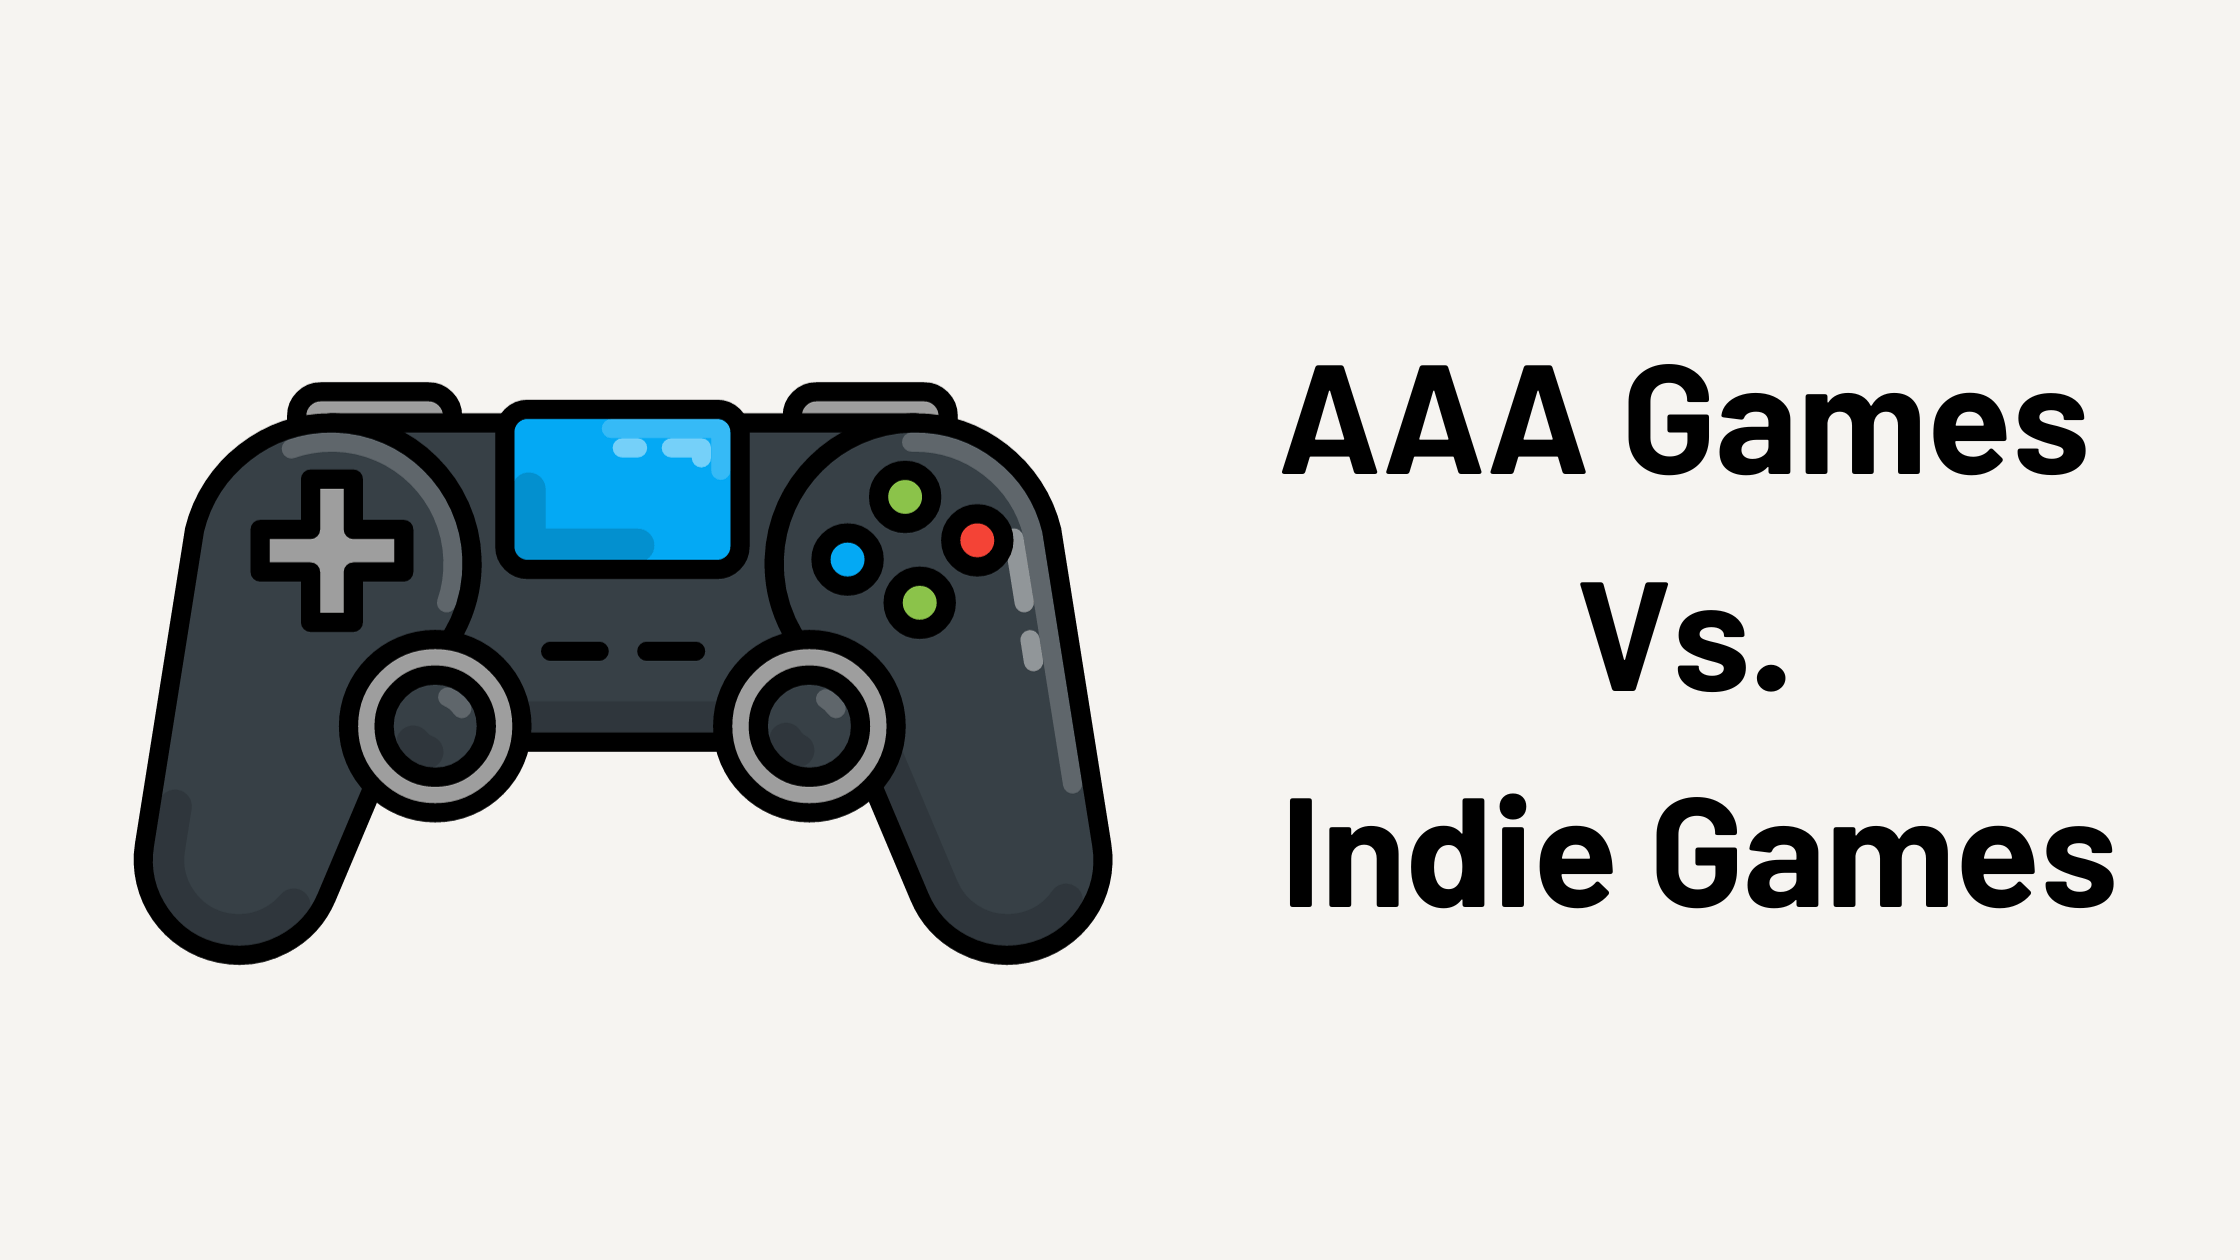 AAA Games vs. Indie Games